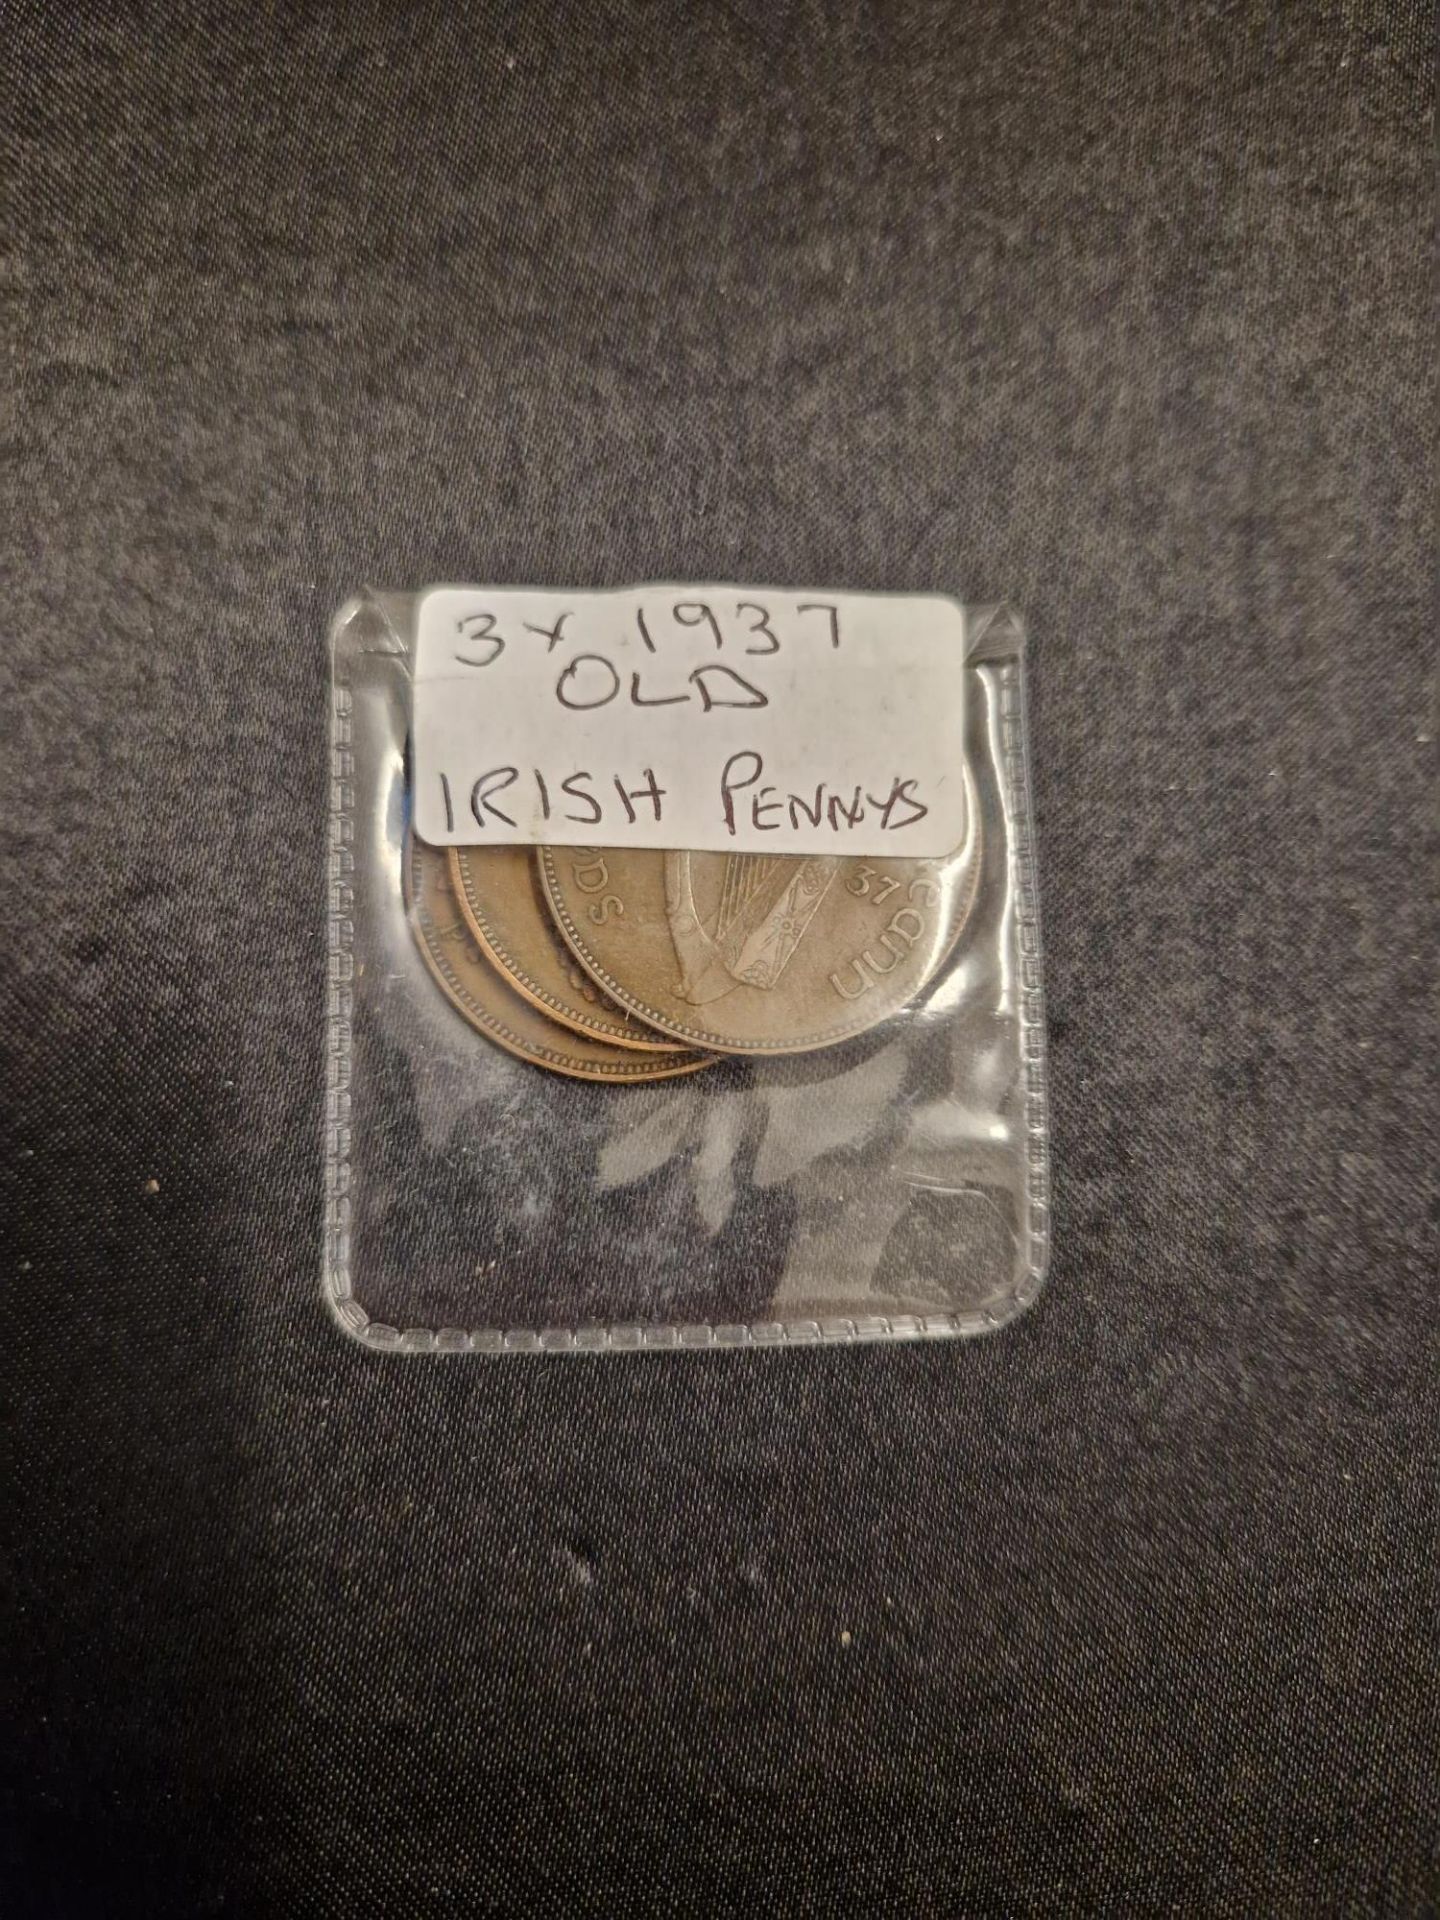 3x 1937 old irish pennys